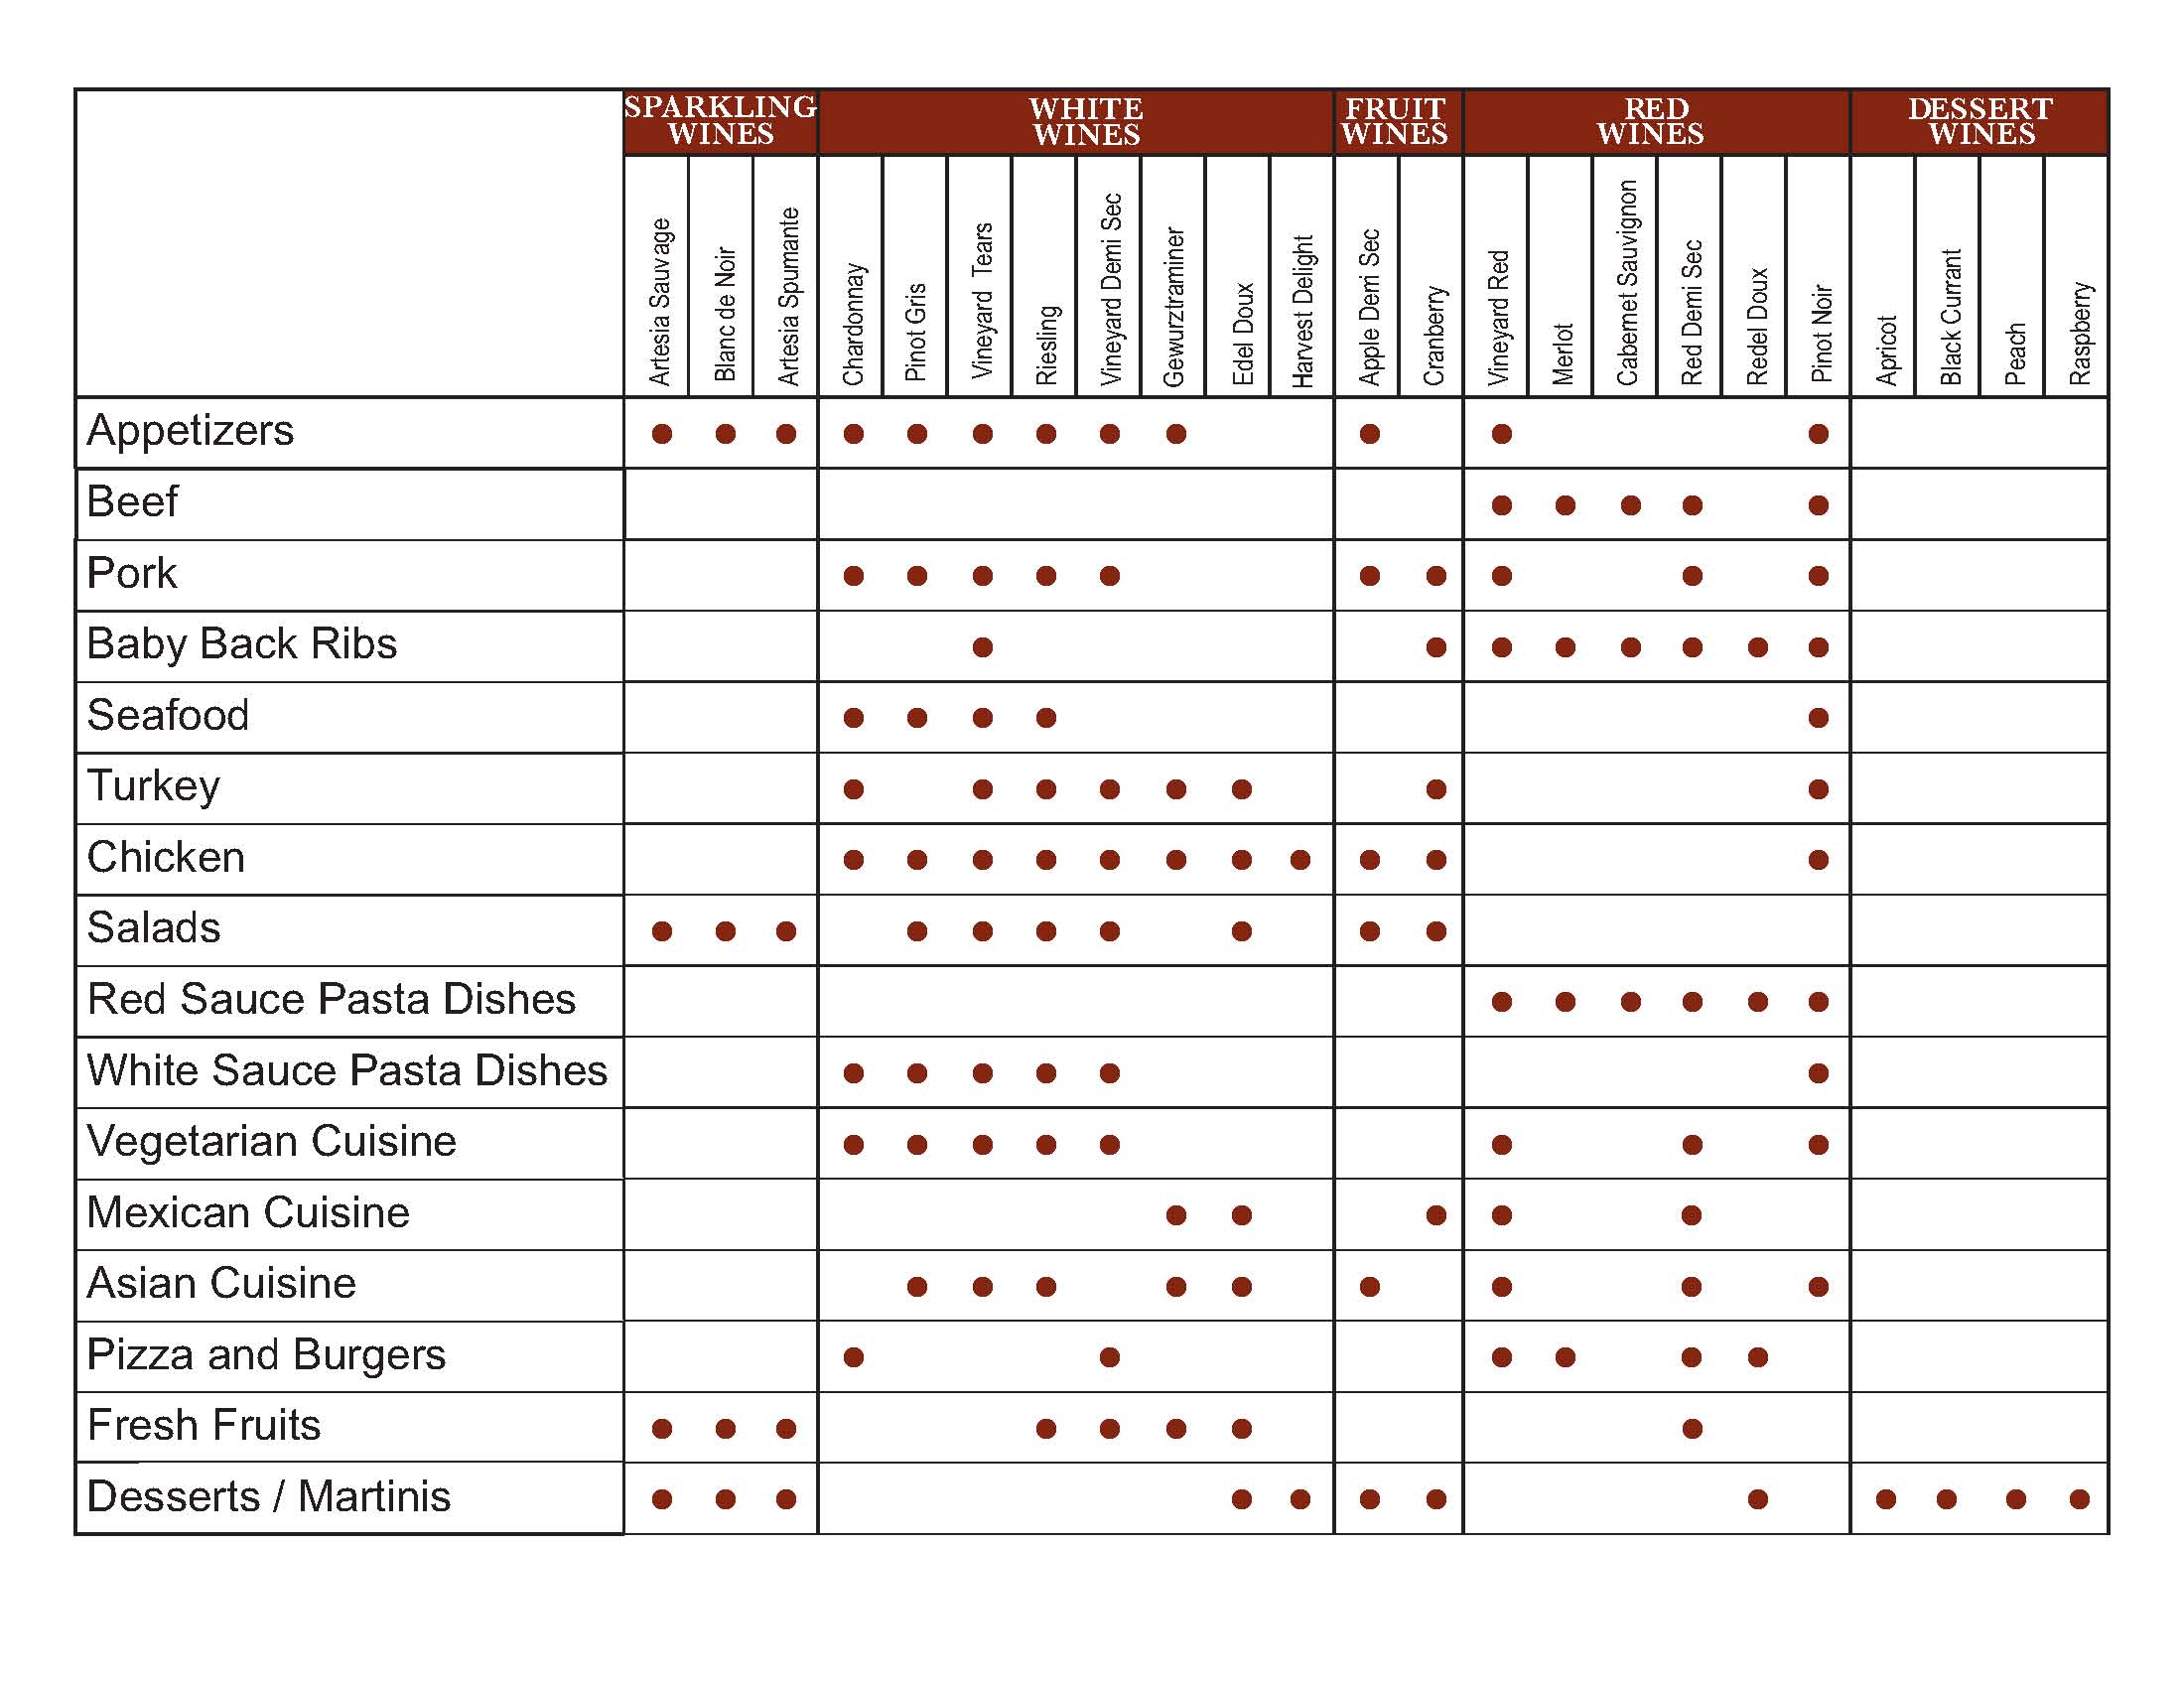 Italian Wine Pairing Chart